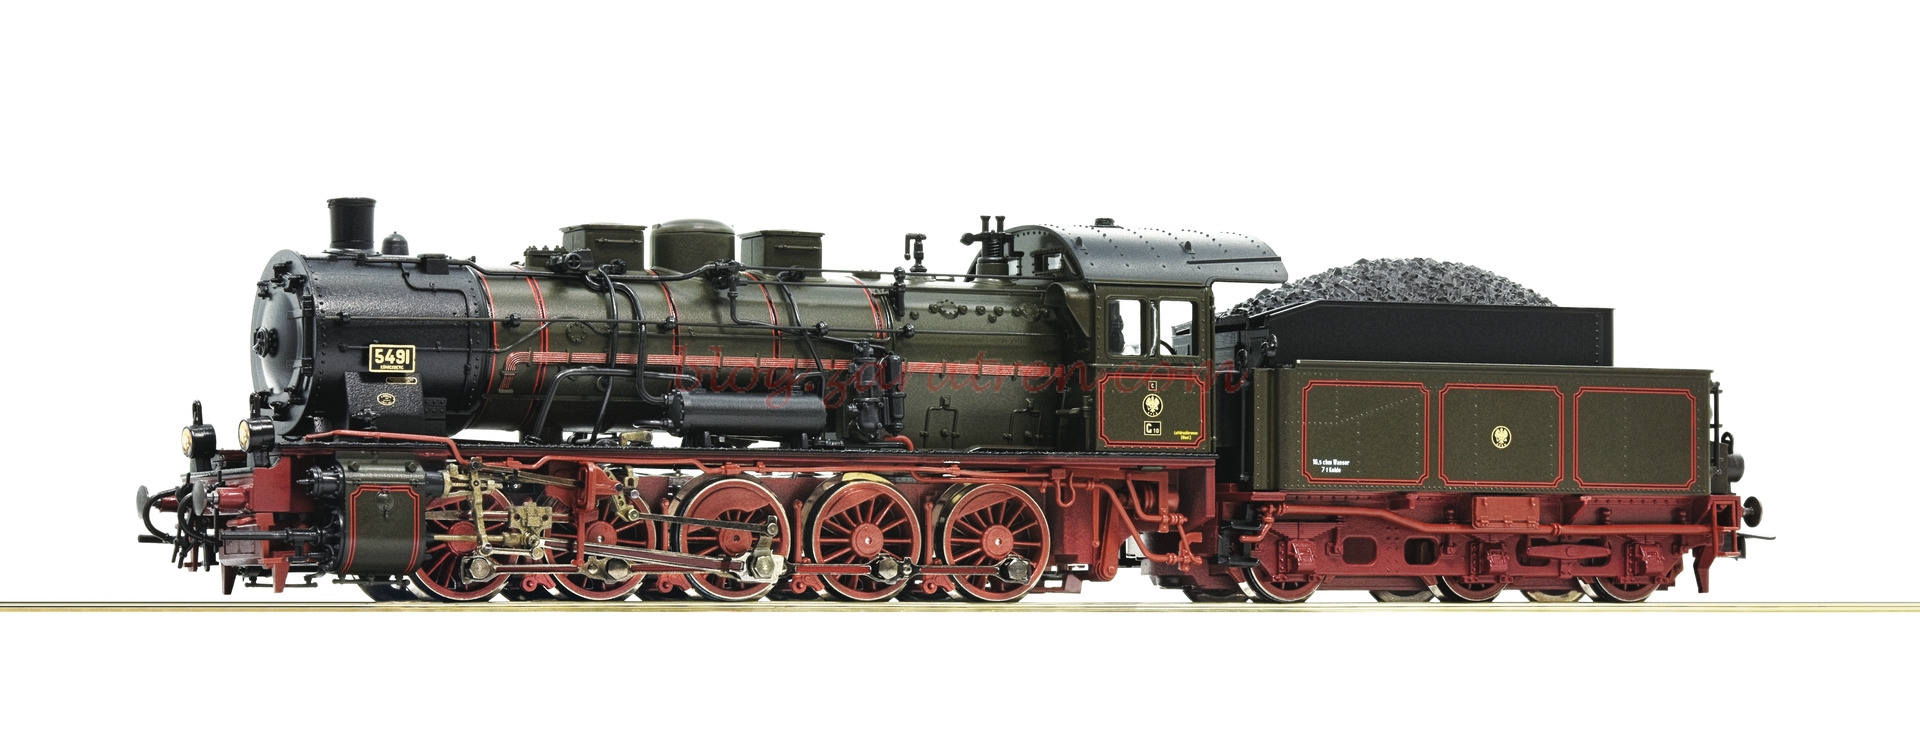 Roco – Locomotora de Vapor Clase G 10, K.P.E.V, Epoca I, Escala H0. Ref: 72261.